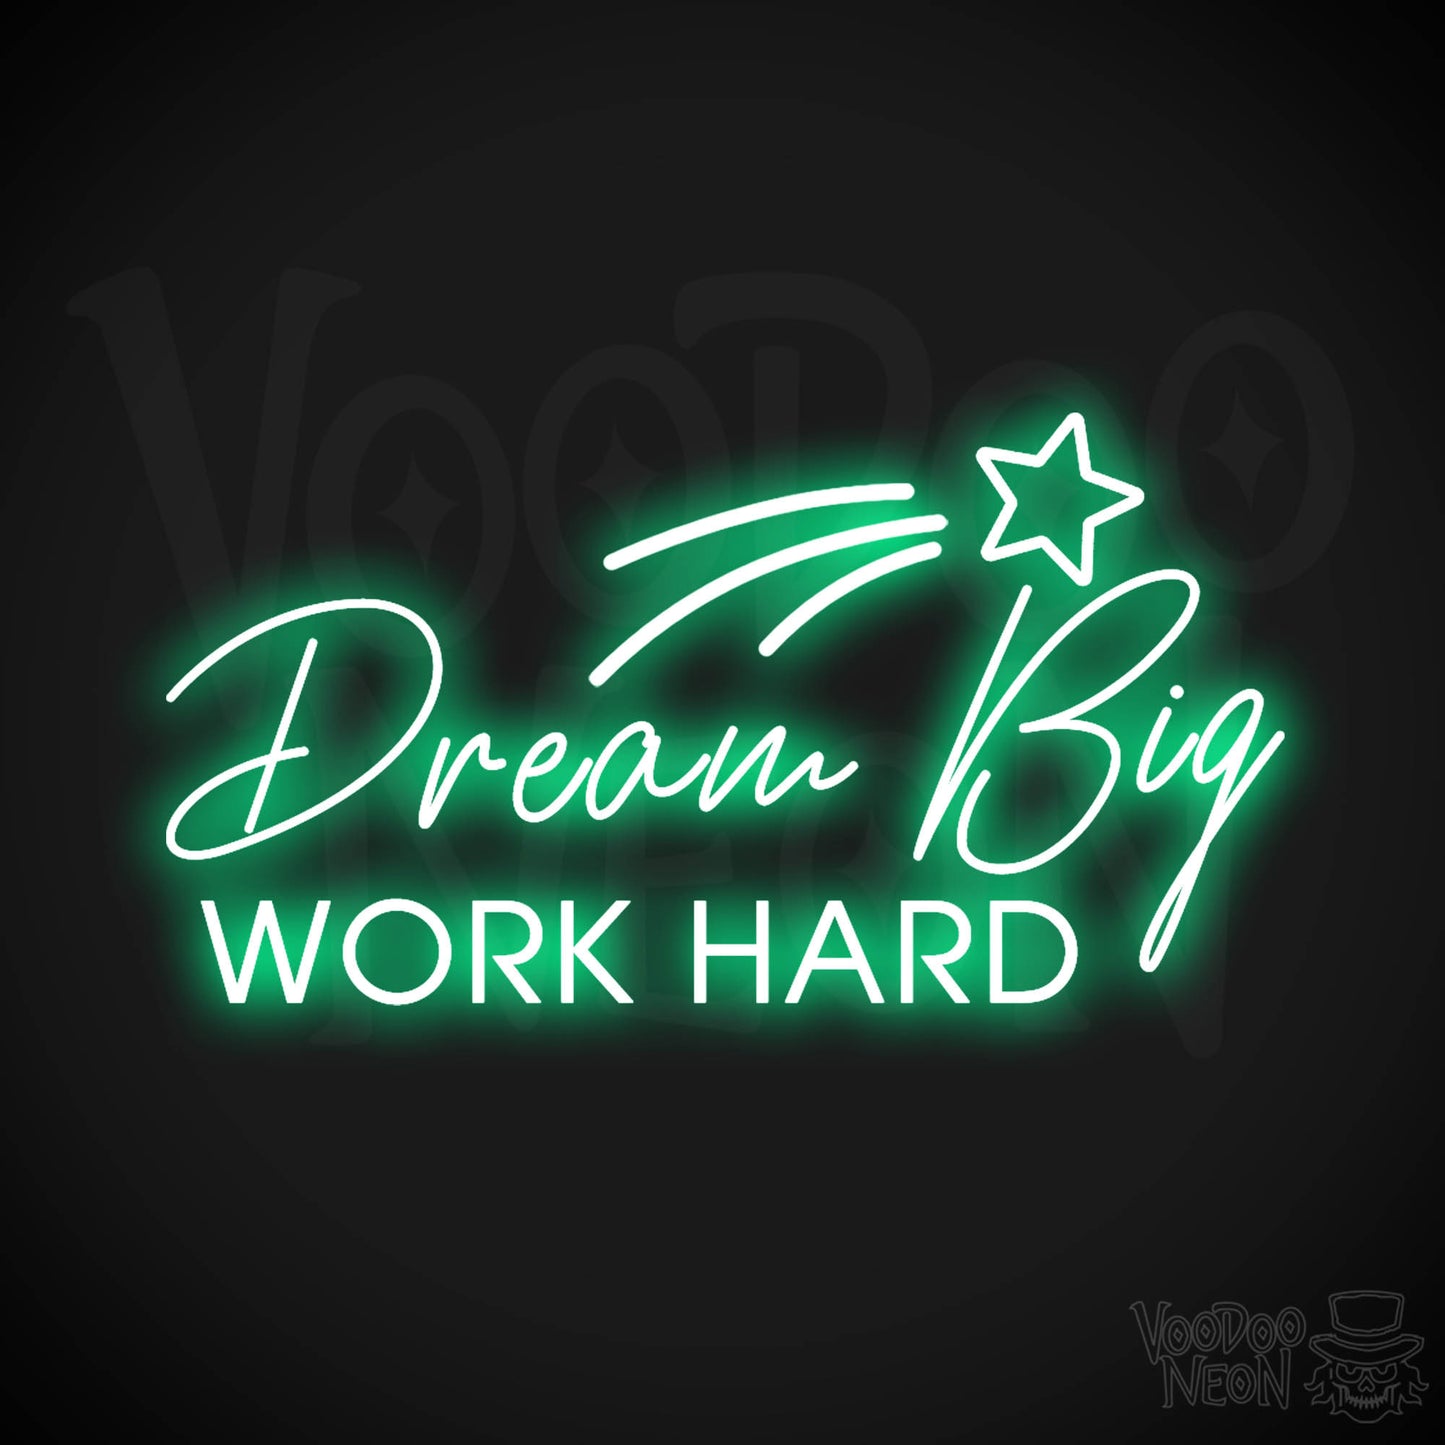 Dream Big Work Hard Neon Sign - Dream Big Work Hard Sign - LED Lights - Color Green